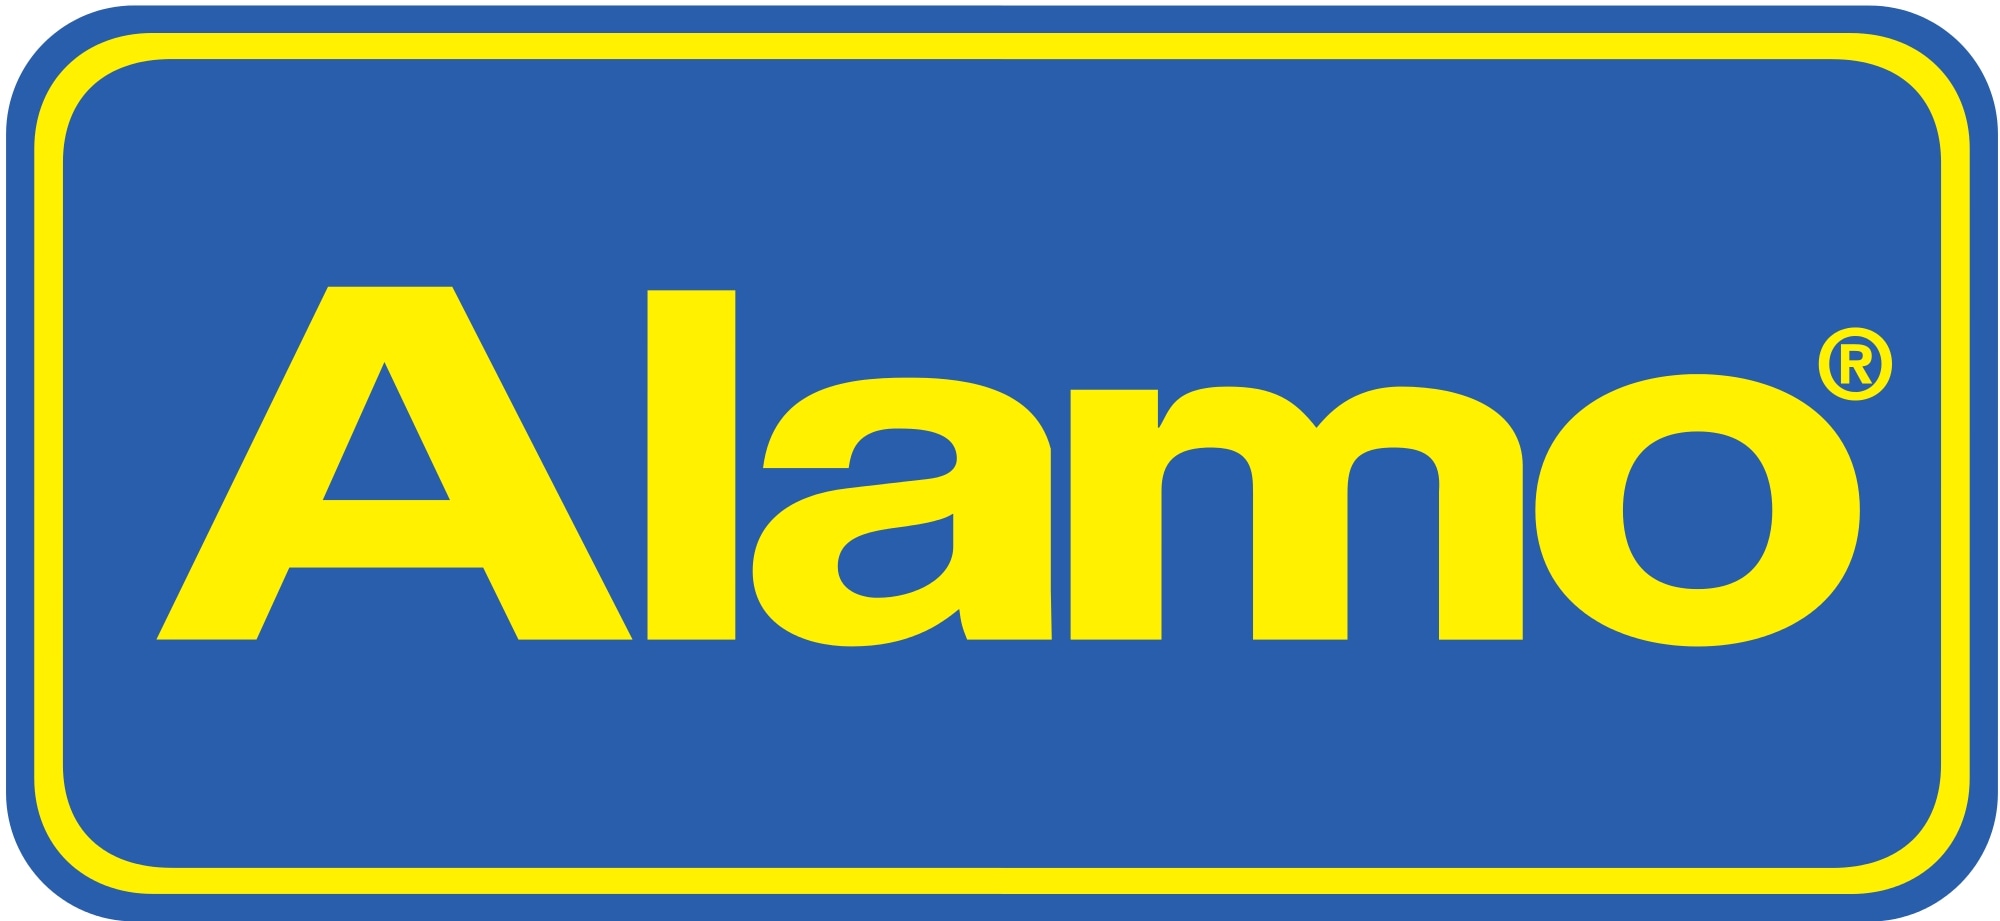 Alamo coupons